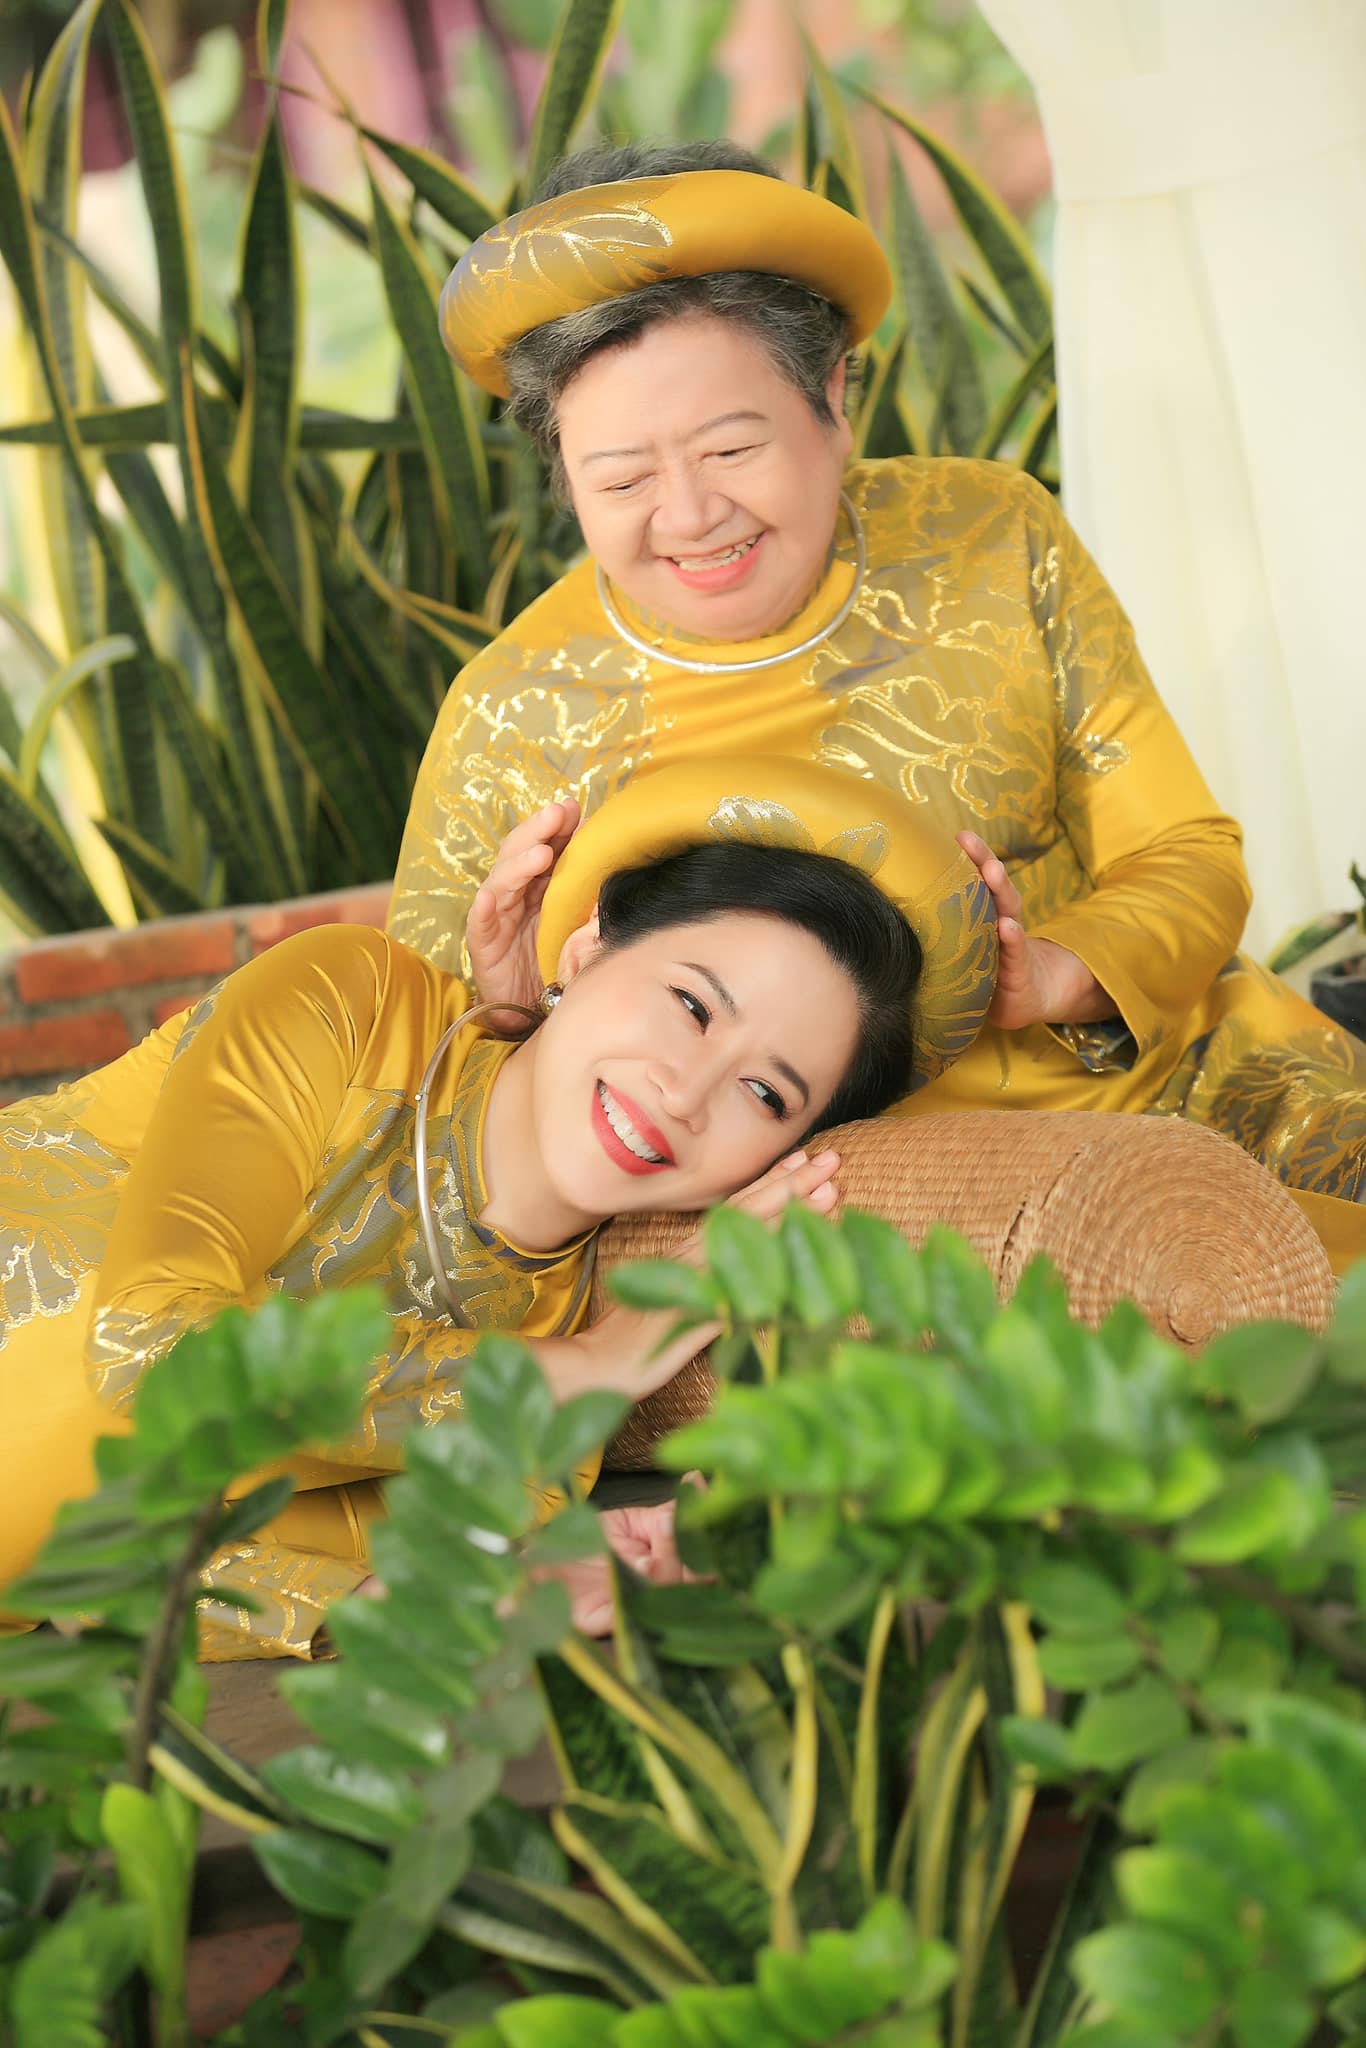 MC Quỳnh Hoa là một trong những đại sứ của Lễ hội Áo dài TPHCM 2022. Chị liên tục chia sẻ hình ảnh mặc áo dài trên trang cá nhân để hưởng ứng sự kiện này. Trong ảnh chị và mẹ 